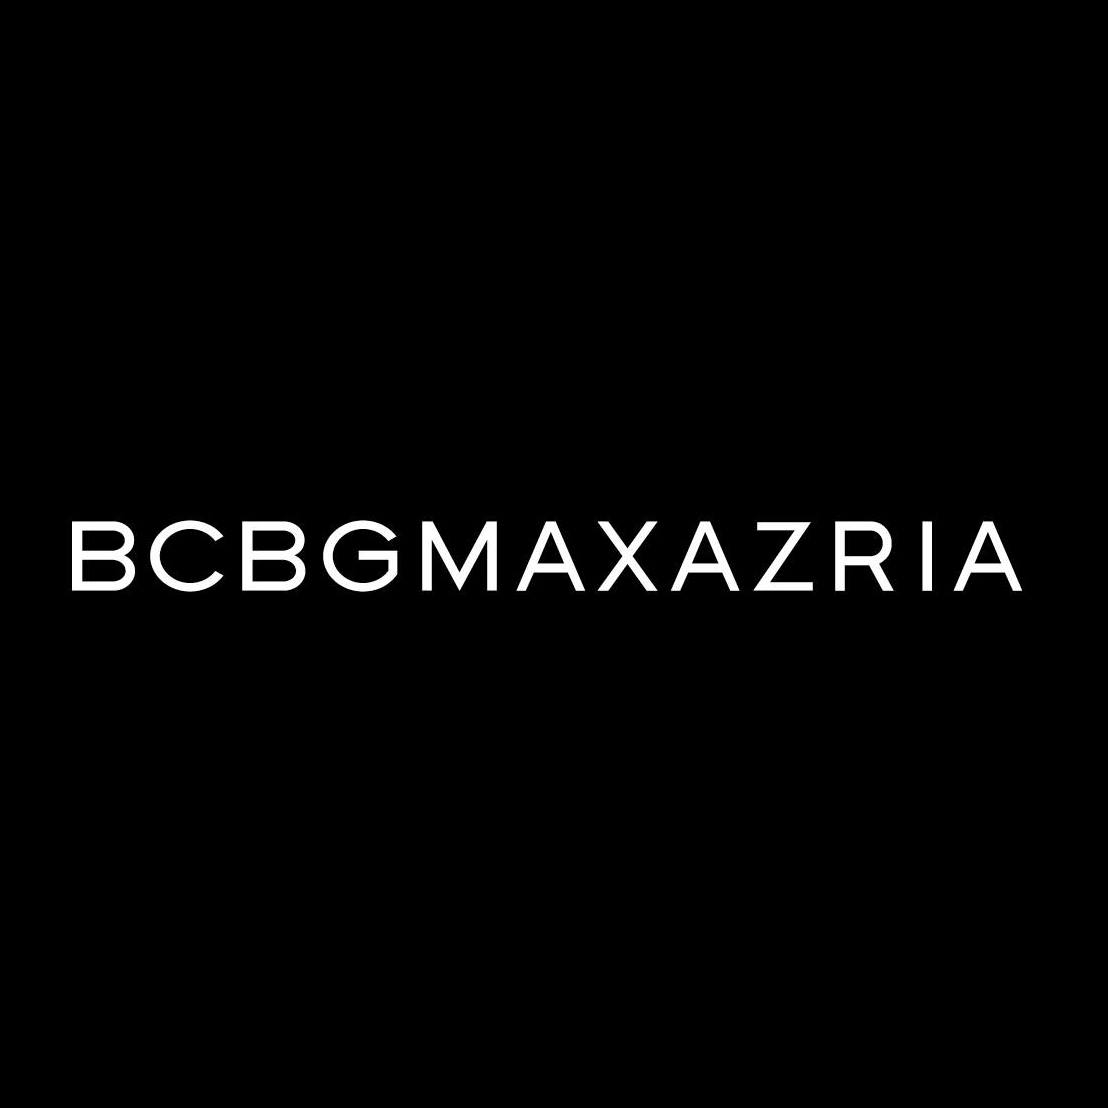 BCBGMAXAZRIA fashion